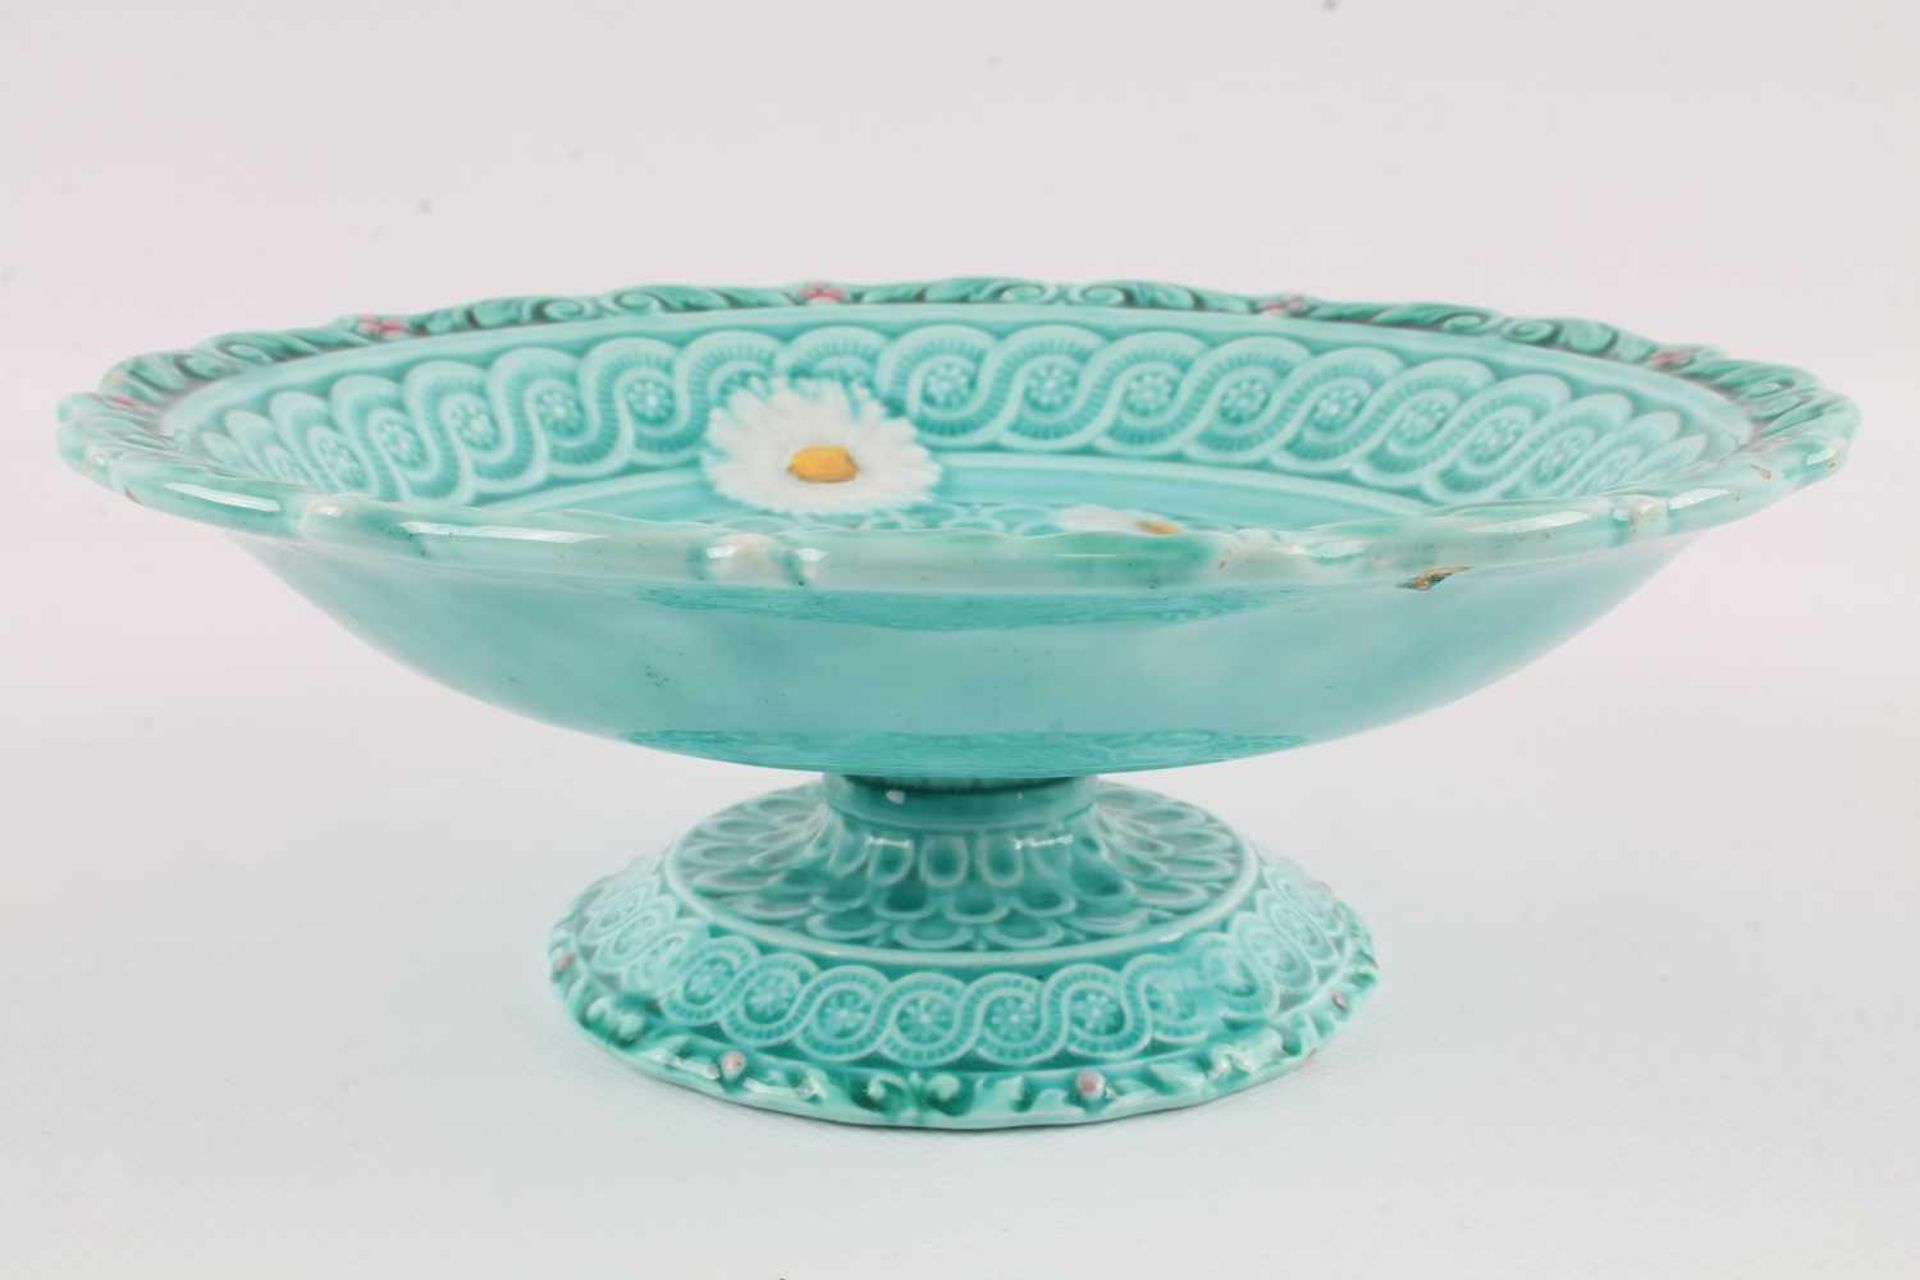 Villeroy & Boch Jugendstil Tafelaufsatz mit 5 Tellern, art nouveau bowl with 5 plates, - Bild 4 aus 6